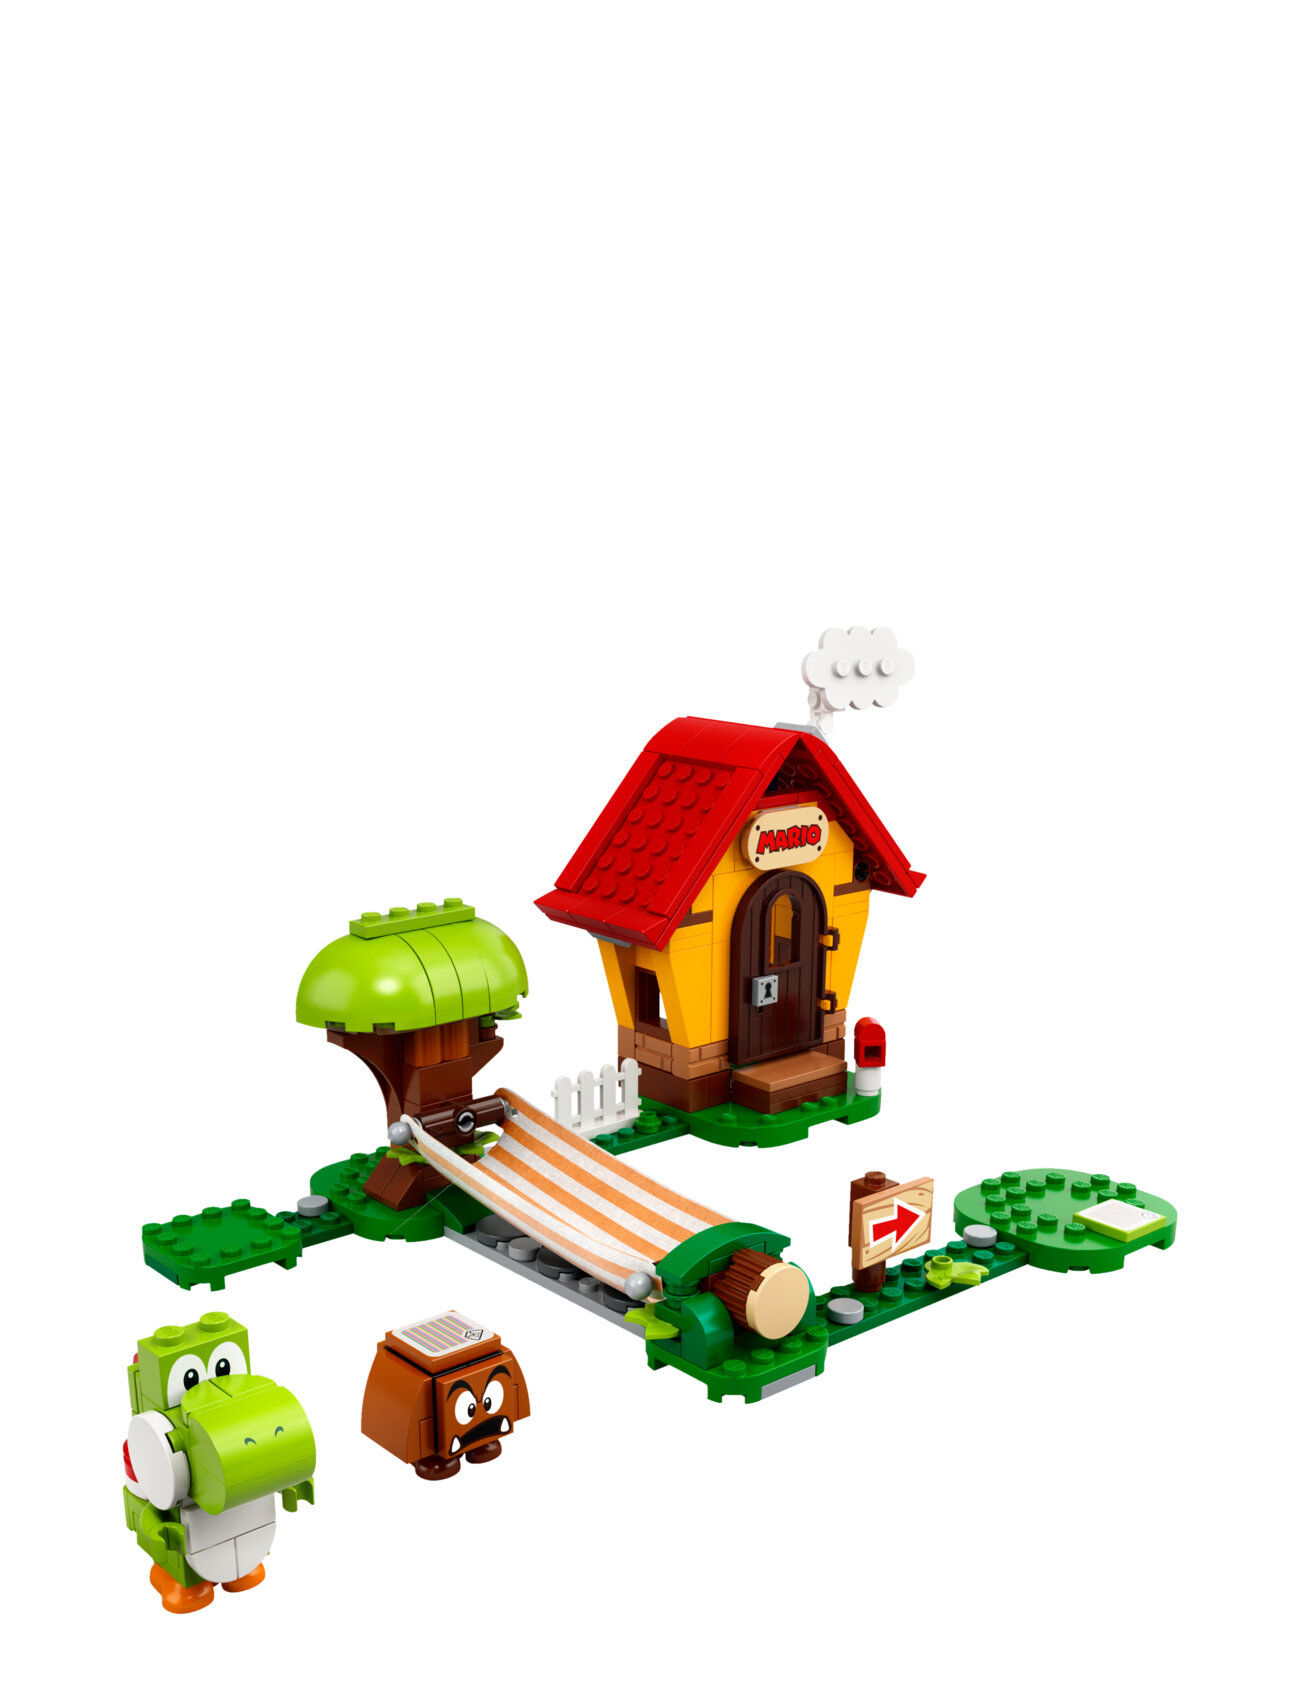 Lego House & Yoshi Expansion Set Toys LEGO Toys LEGO Super Mario Multi/mønstret LEGO